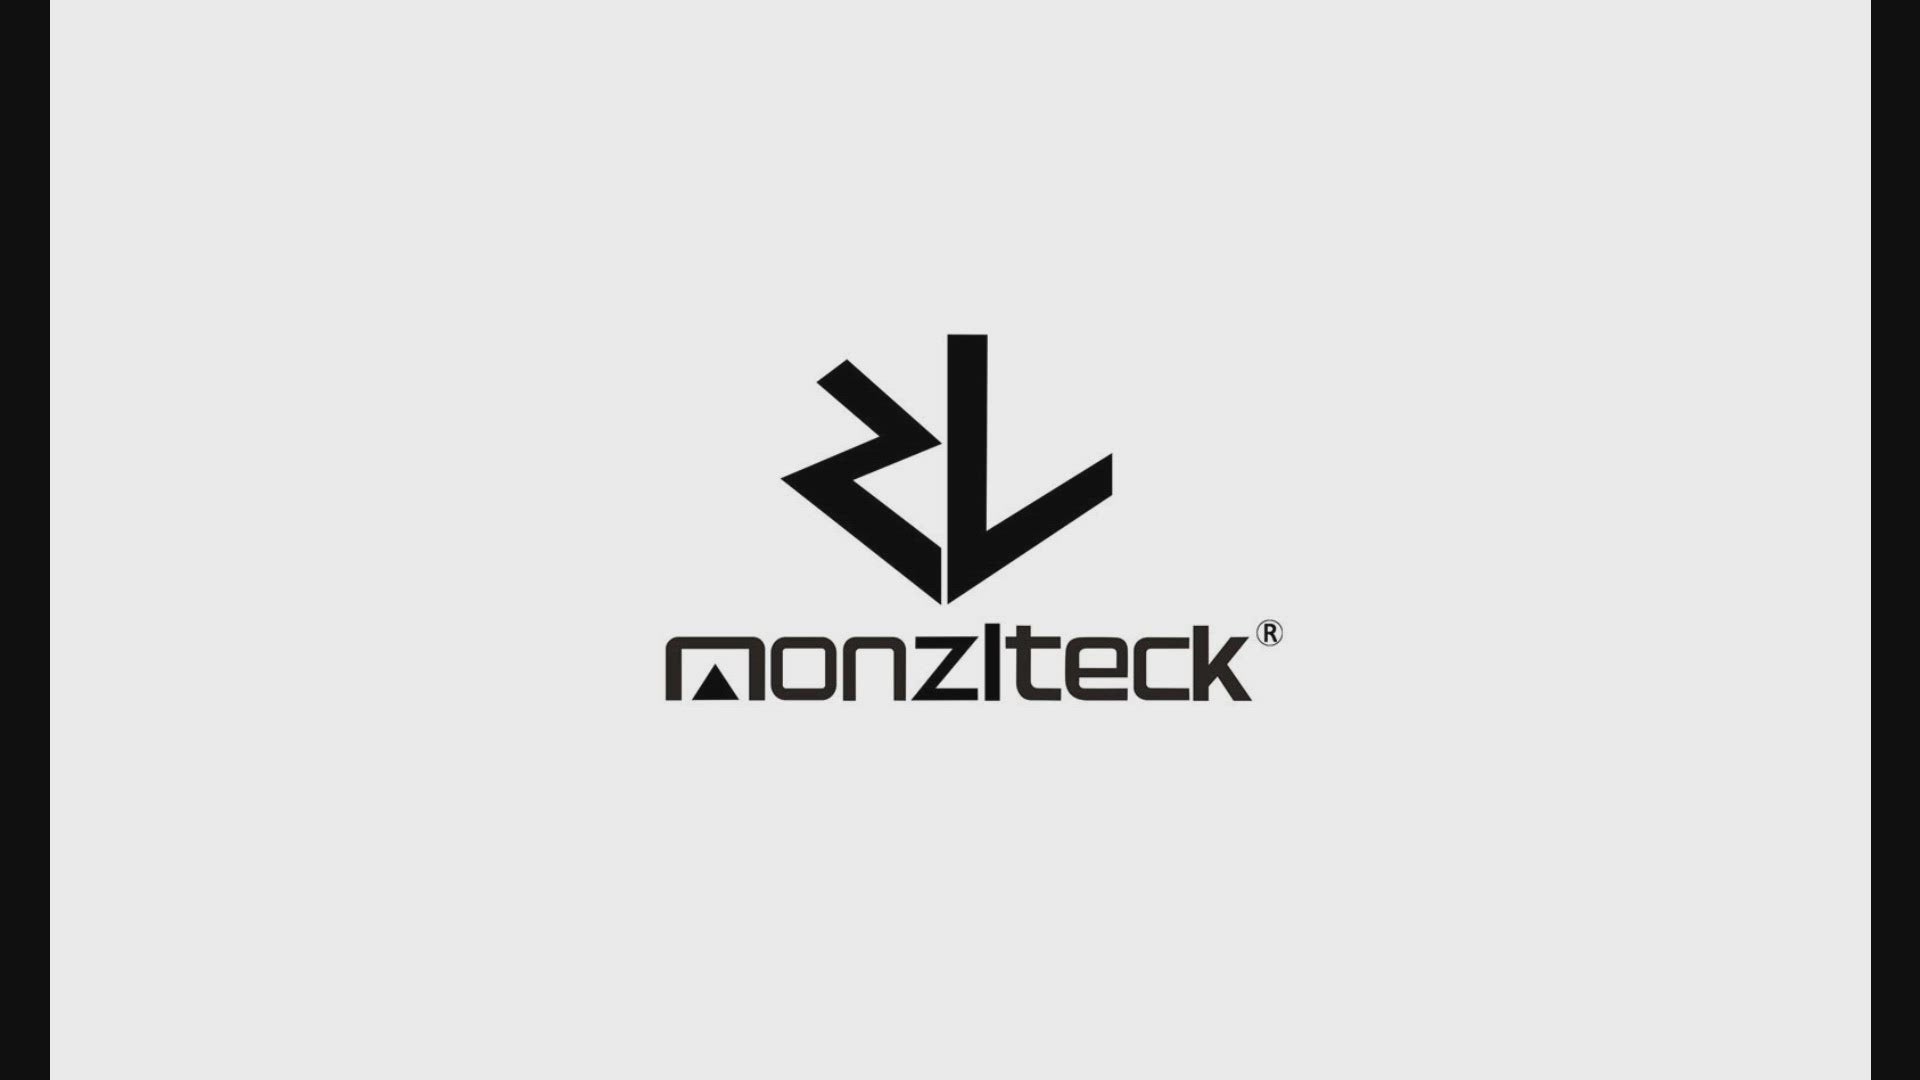  Monzlteck Nuevo soporte de pared para PS-4 Slim, cerca o detrás  de TV, ahorro de espacio, personalizado para adaptarse perfectamente a  PlayStation4 Slim, fácil de instalar : Videojuegos